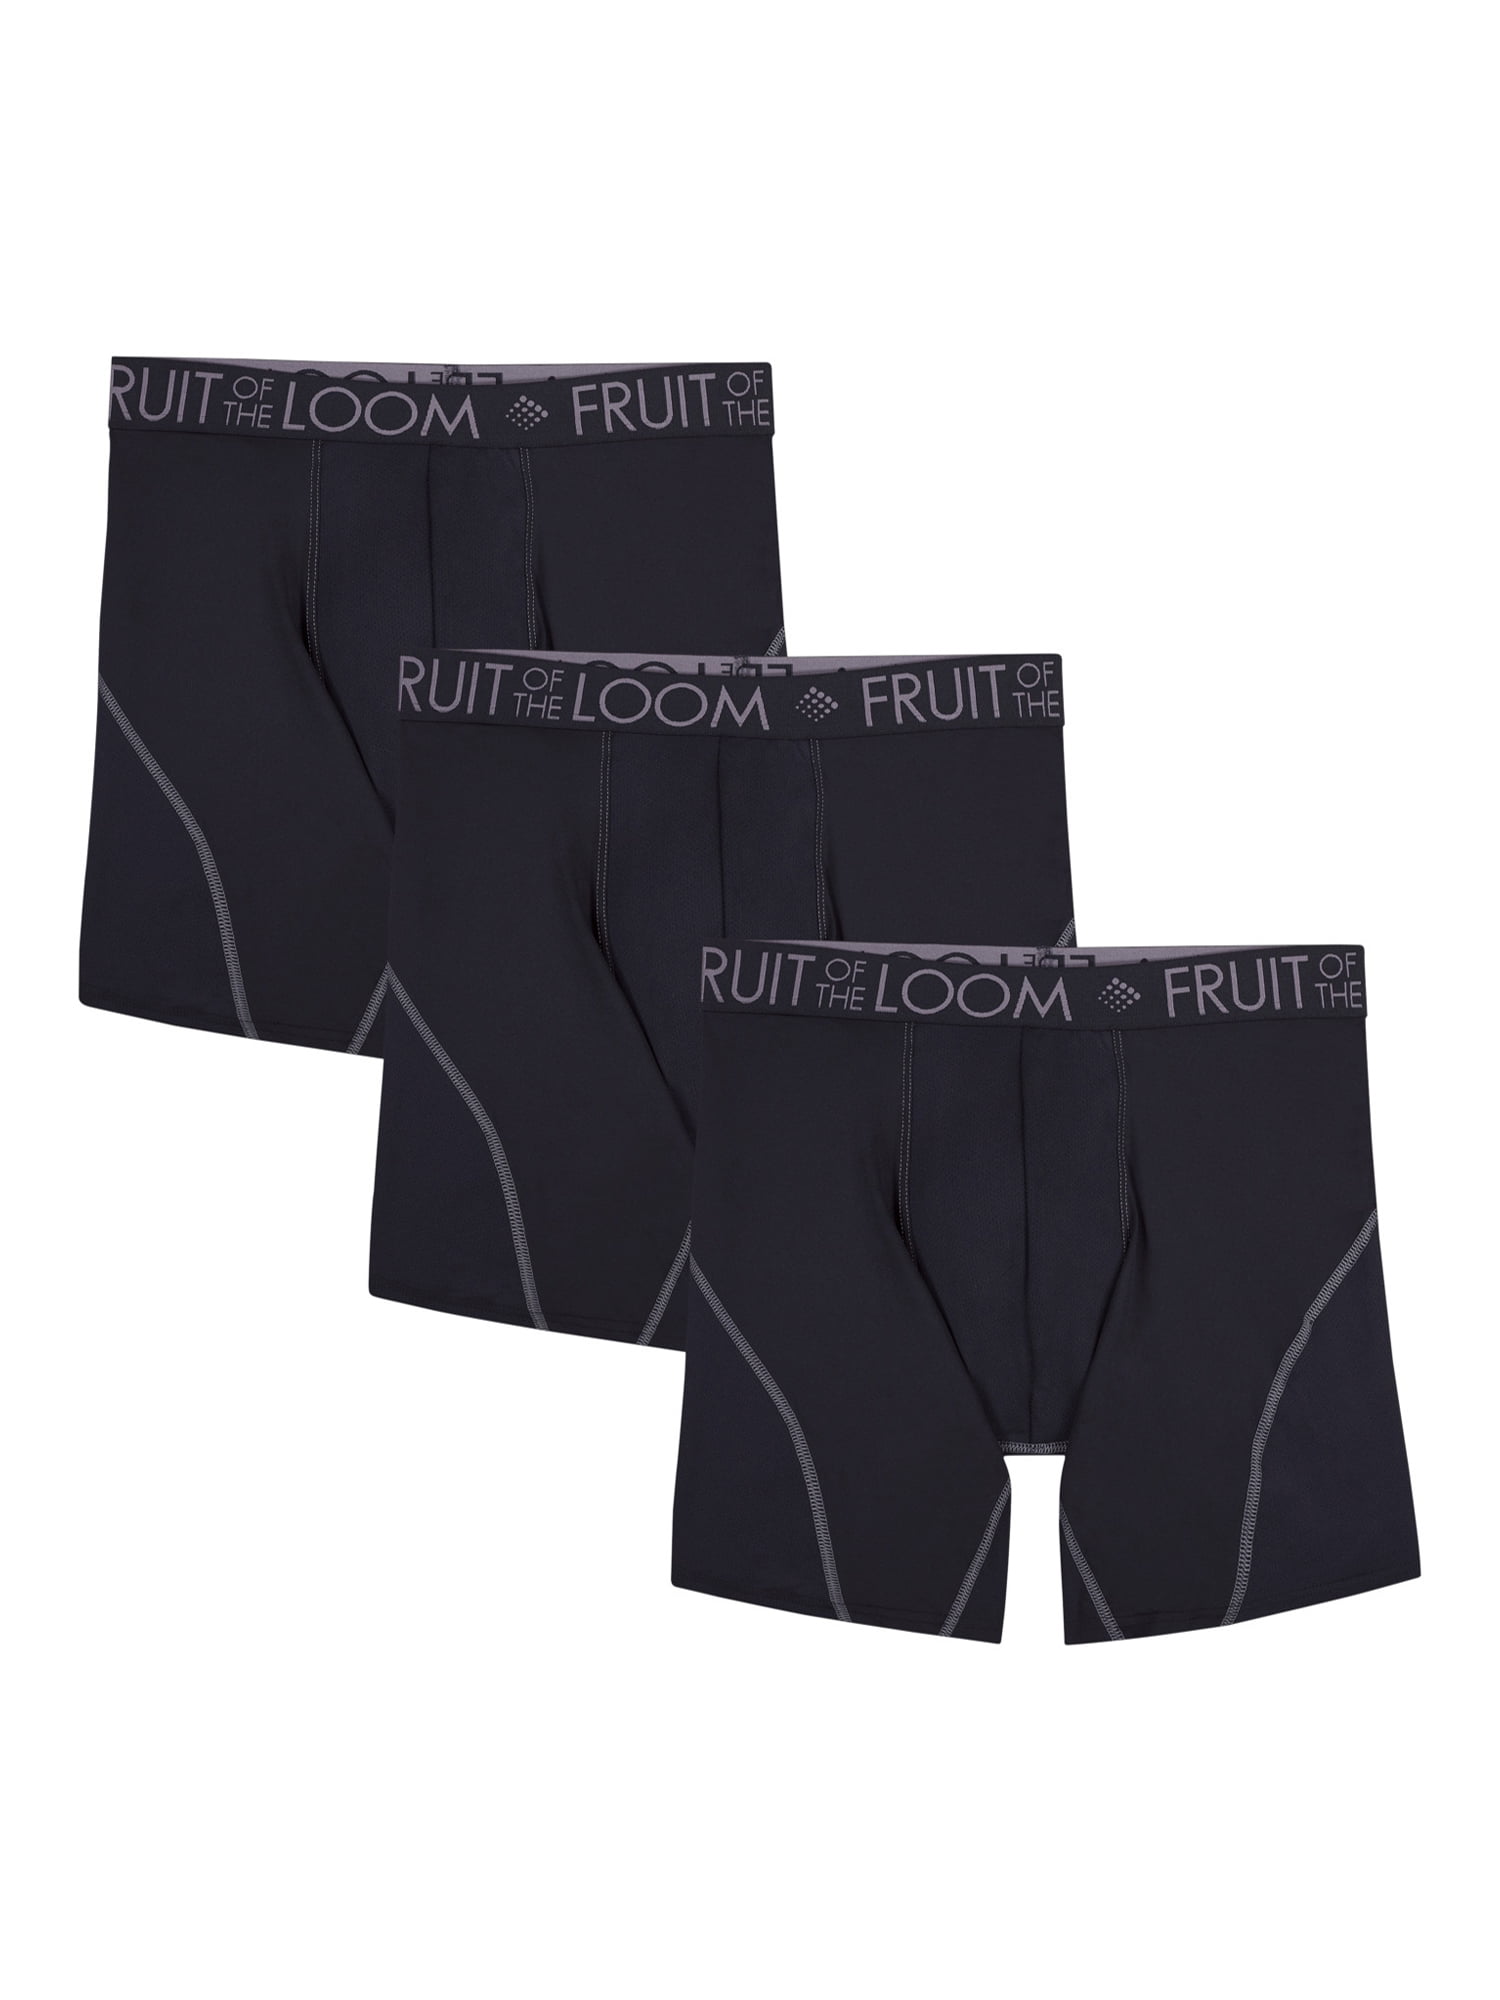 Fruit of the Loom Men's 3pk Ultra Flex Short Leg Boxer Brief, Assorted, XL  price in UAE,  UAE